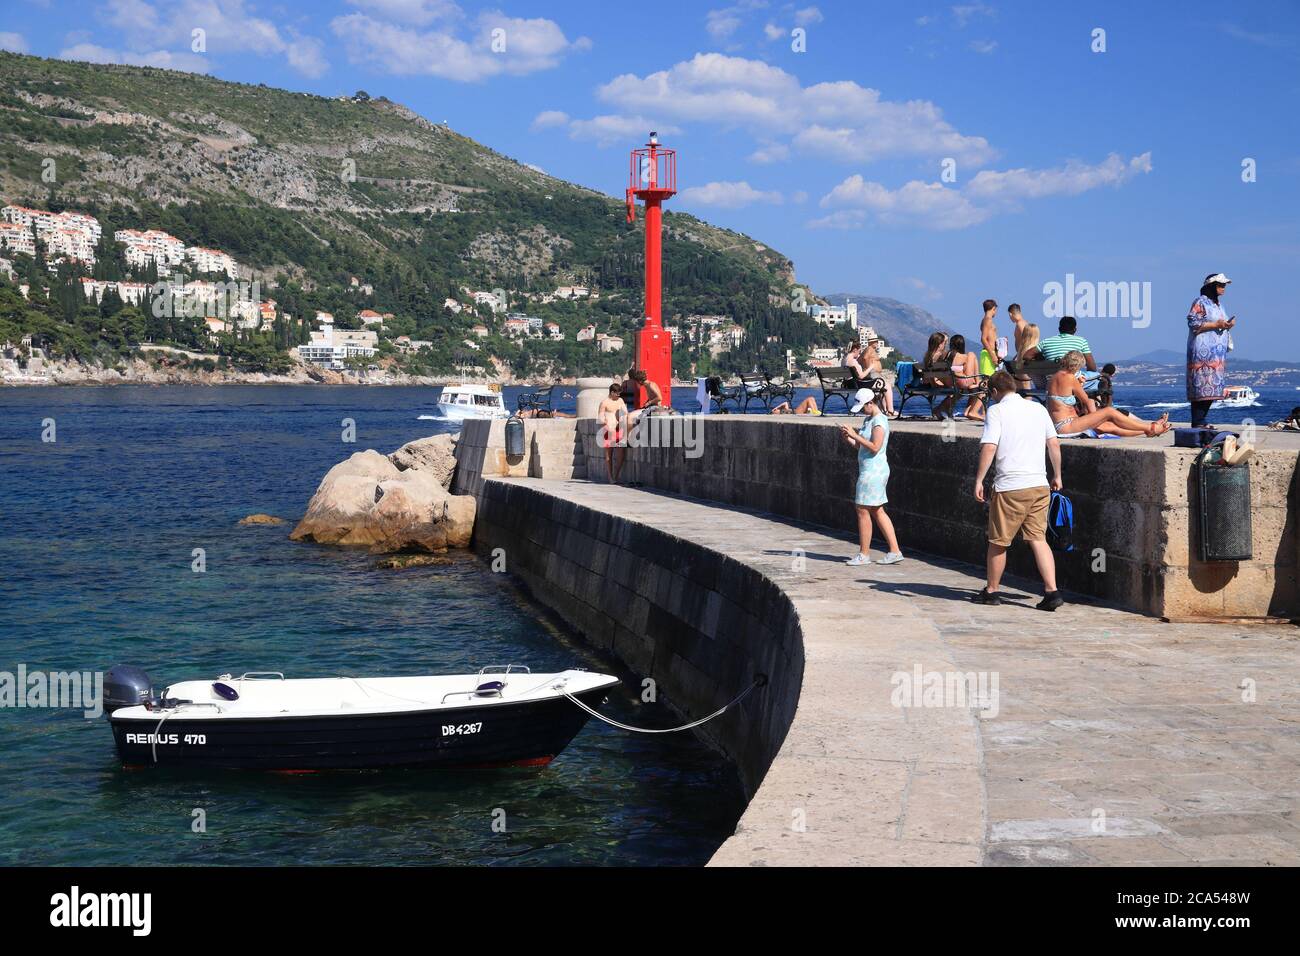 DUBROVNIK, CROACIA - 26 DE JULIO de 2019: Los turistas visitan un rompeolas en el puerto de Dubrovnik, un lugar declarado Patrimonio de la Humanidad por la UNESCO. Foto de stock